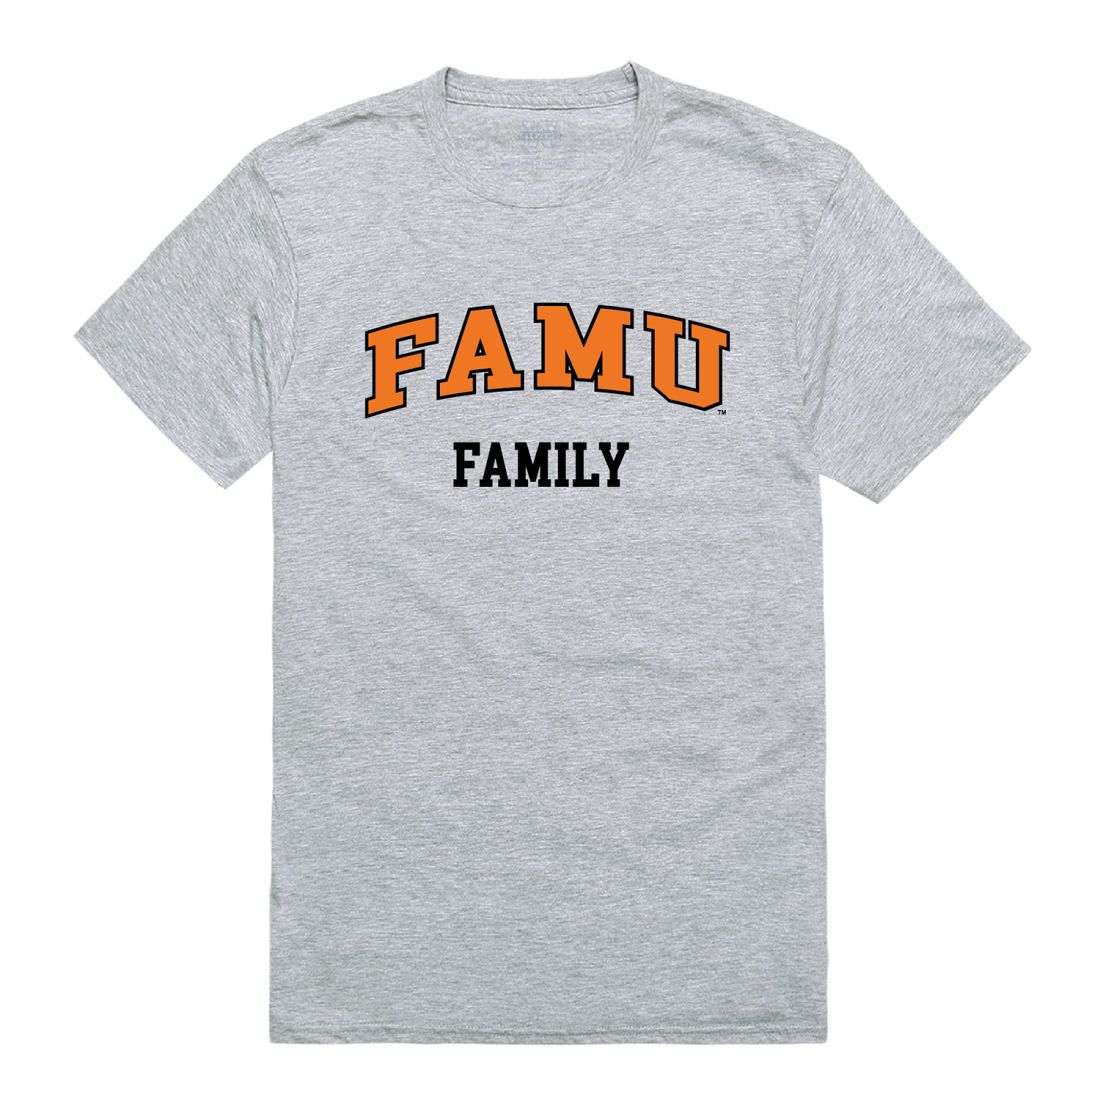 FAMU Florida A&M University Rattlers Family T-Shirt